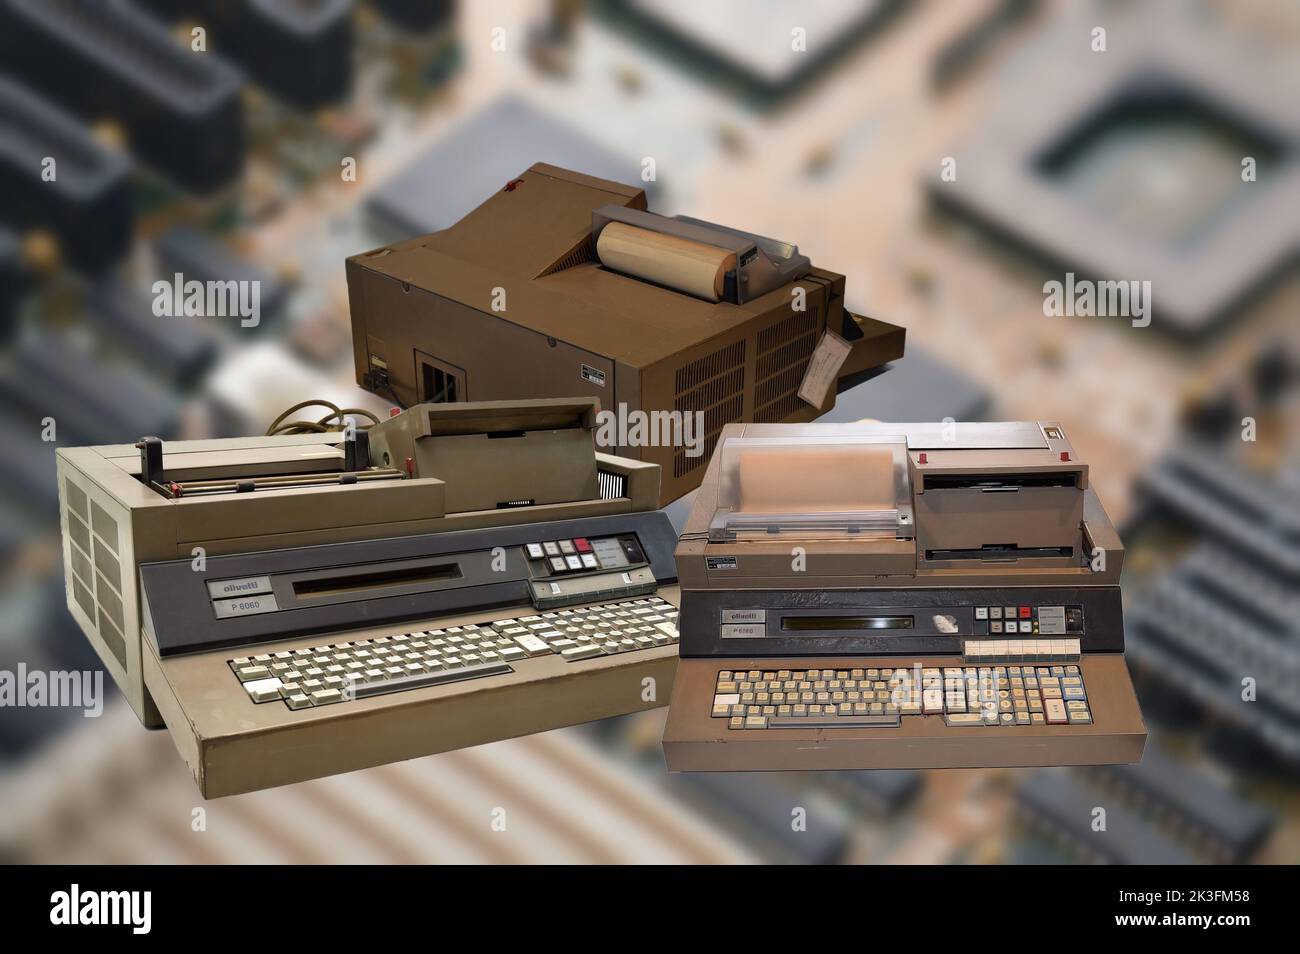 Der Olivetti P6060 ist einer der ersten PCs, die Olivetti 1975 produzierte Stockfoto